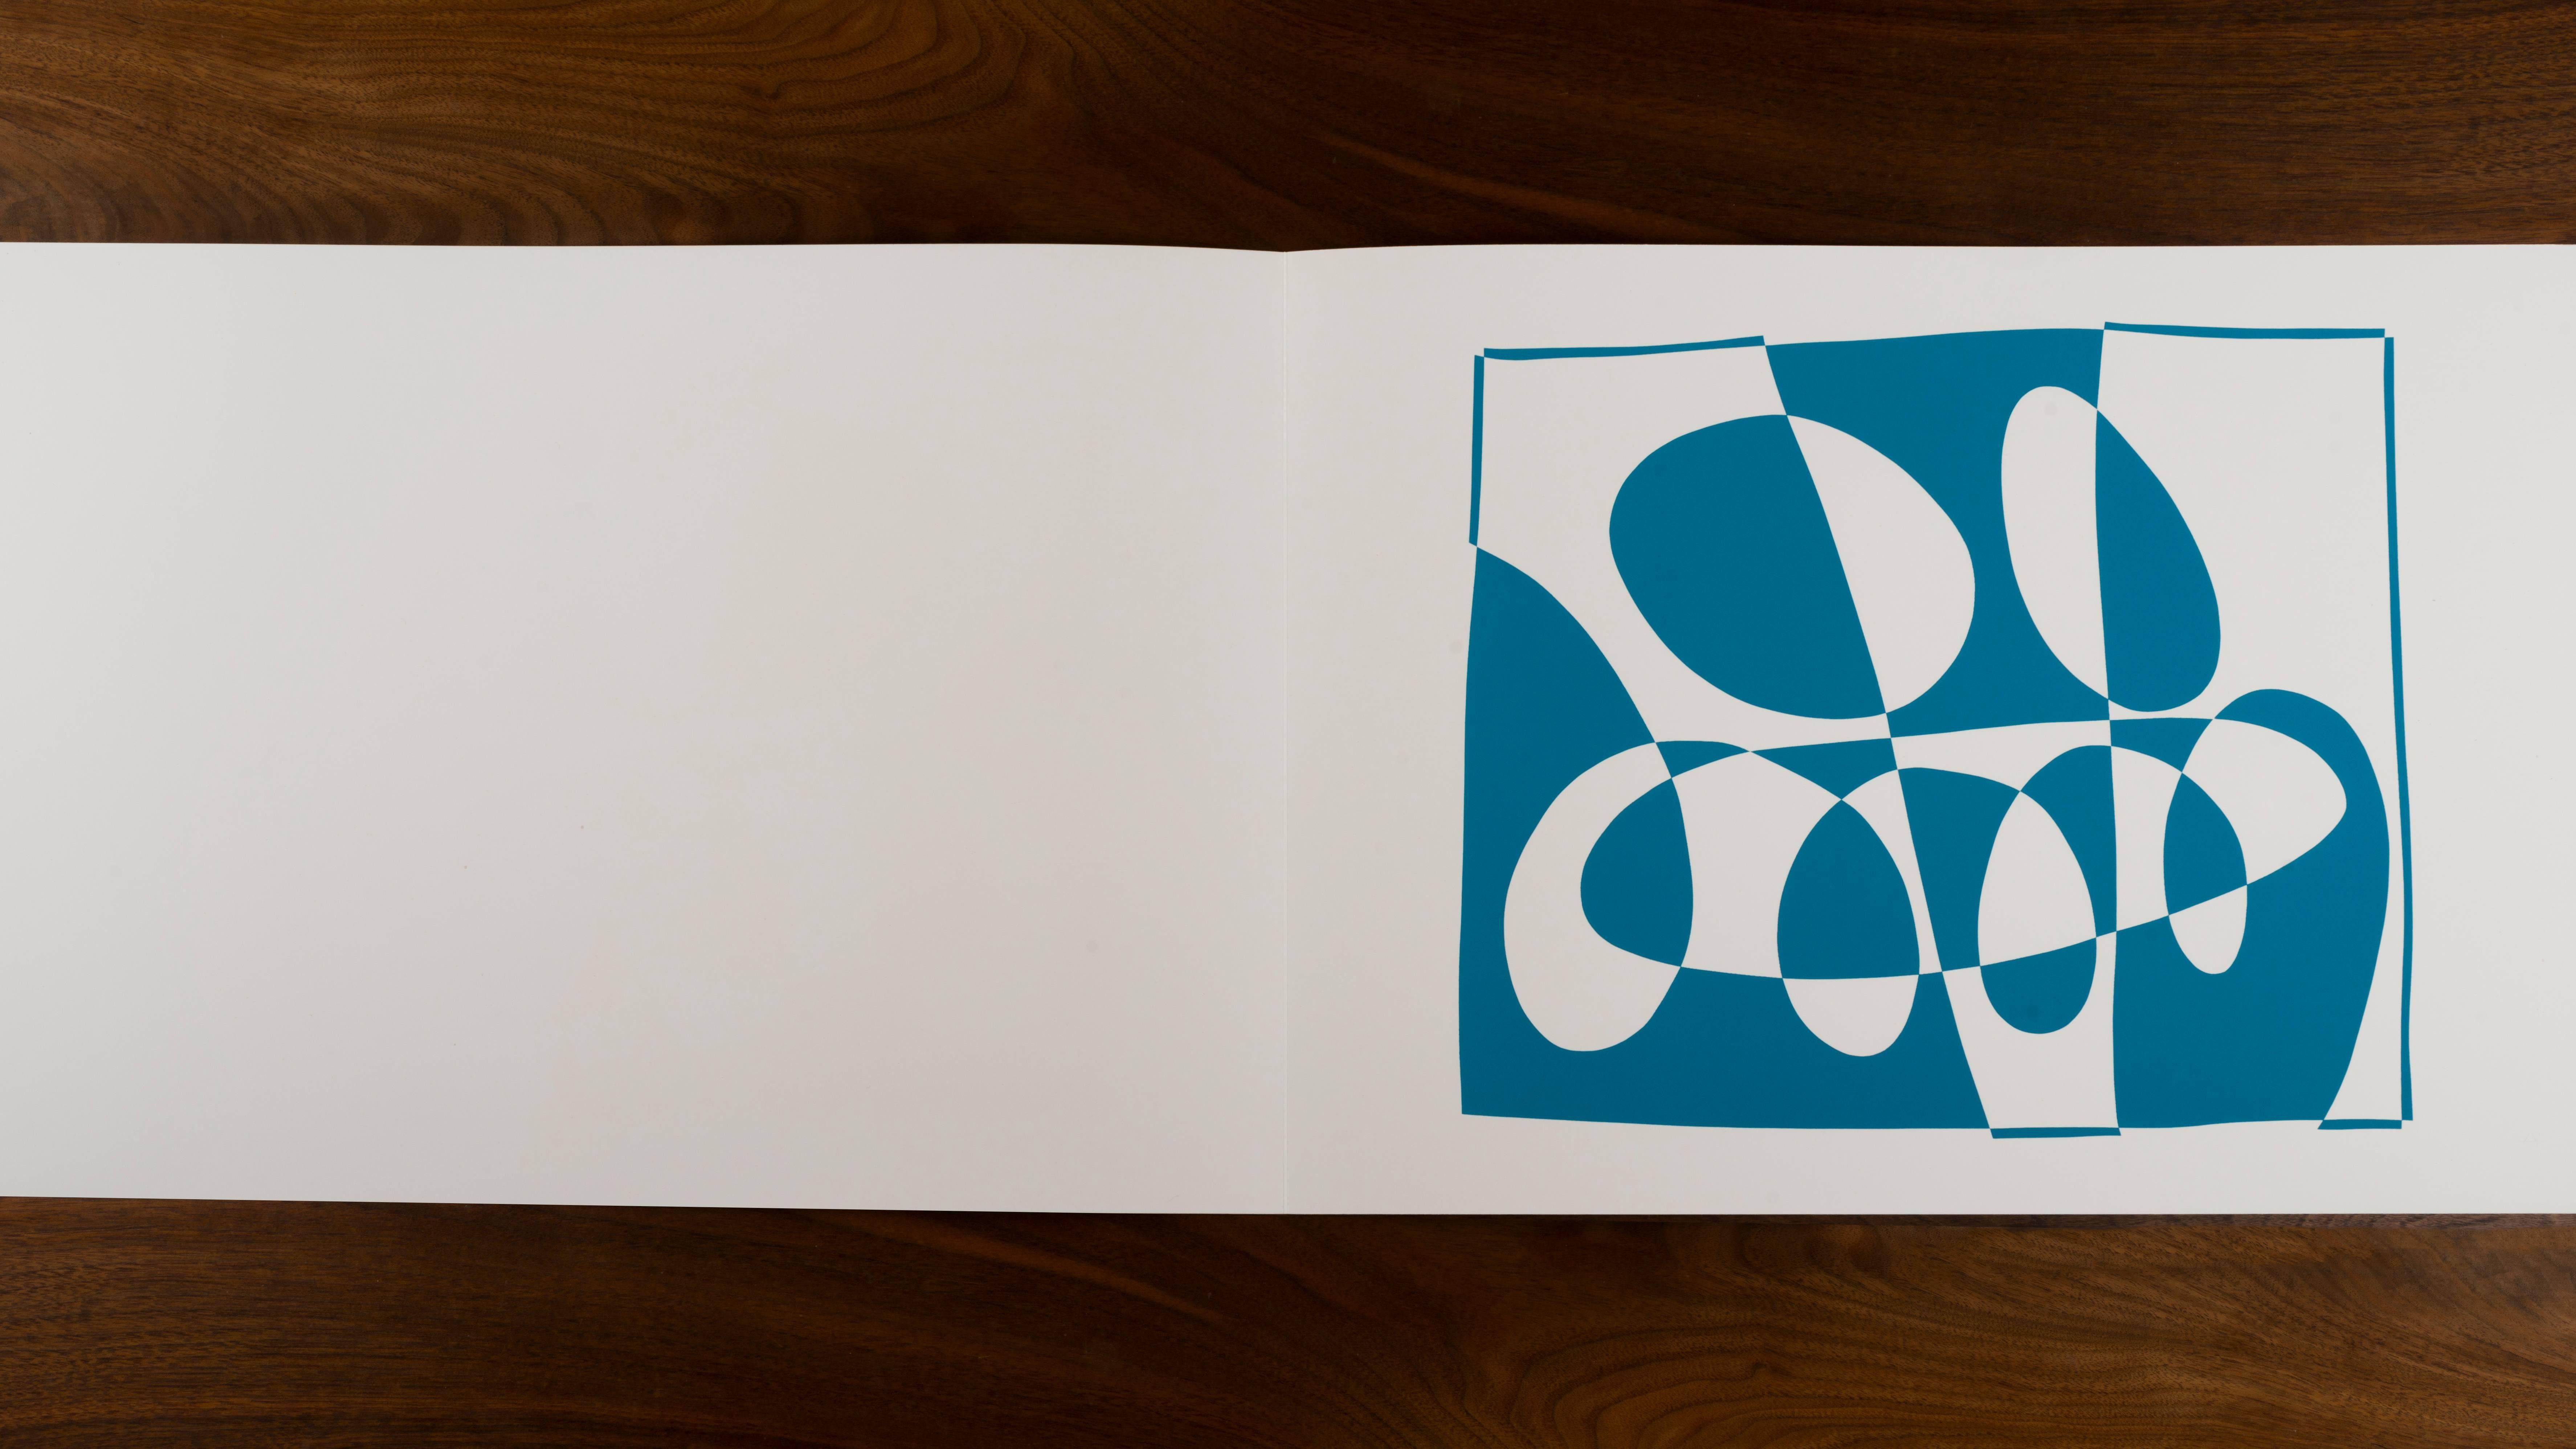 Josef Albers, Formulierungen - Artikulationen I & II
Ausgabe 974/ 1000
1972 Siebdruck auf Papier
Geprägt mit den Initialen von Josef Albers, Mappen- und Ordnernummer. Dieses Werk wird von Harry N. Abrams und Ives-Sillman veröffentlicht.
Dieses